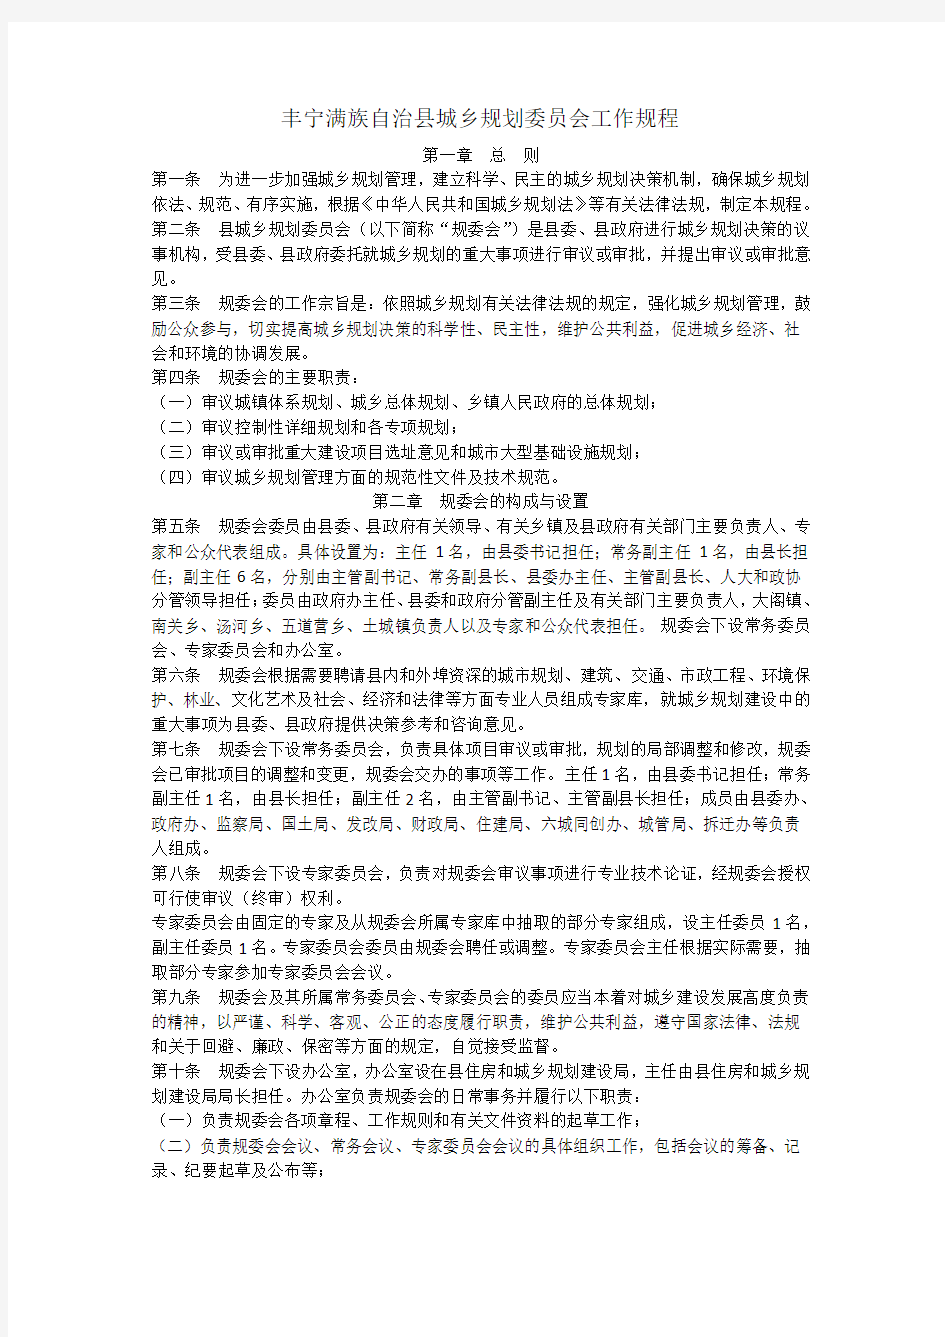 丰宁满族自治县城乡规划委员会工作规程-20120413